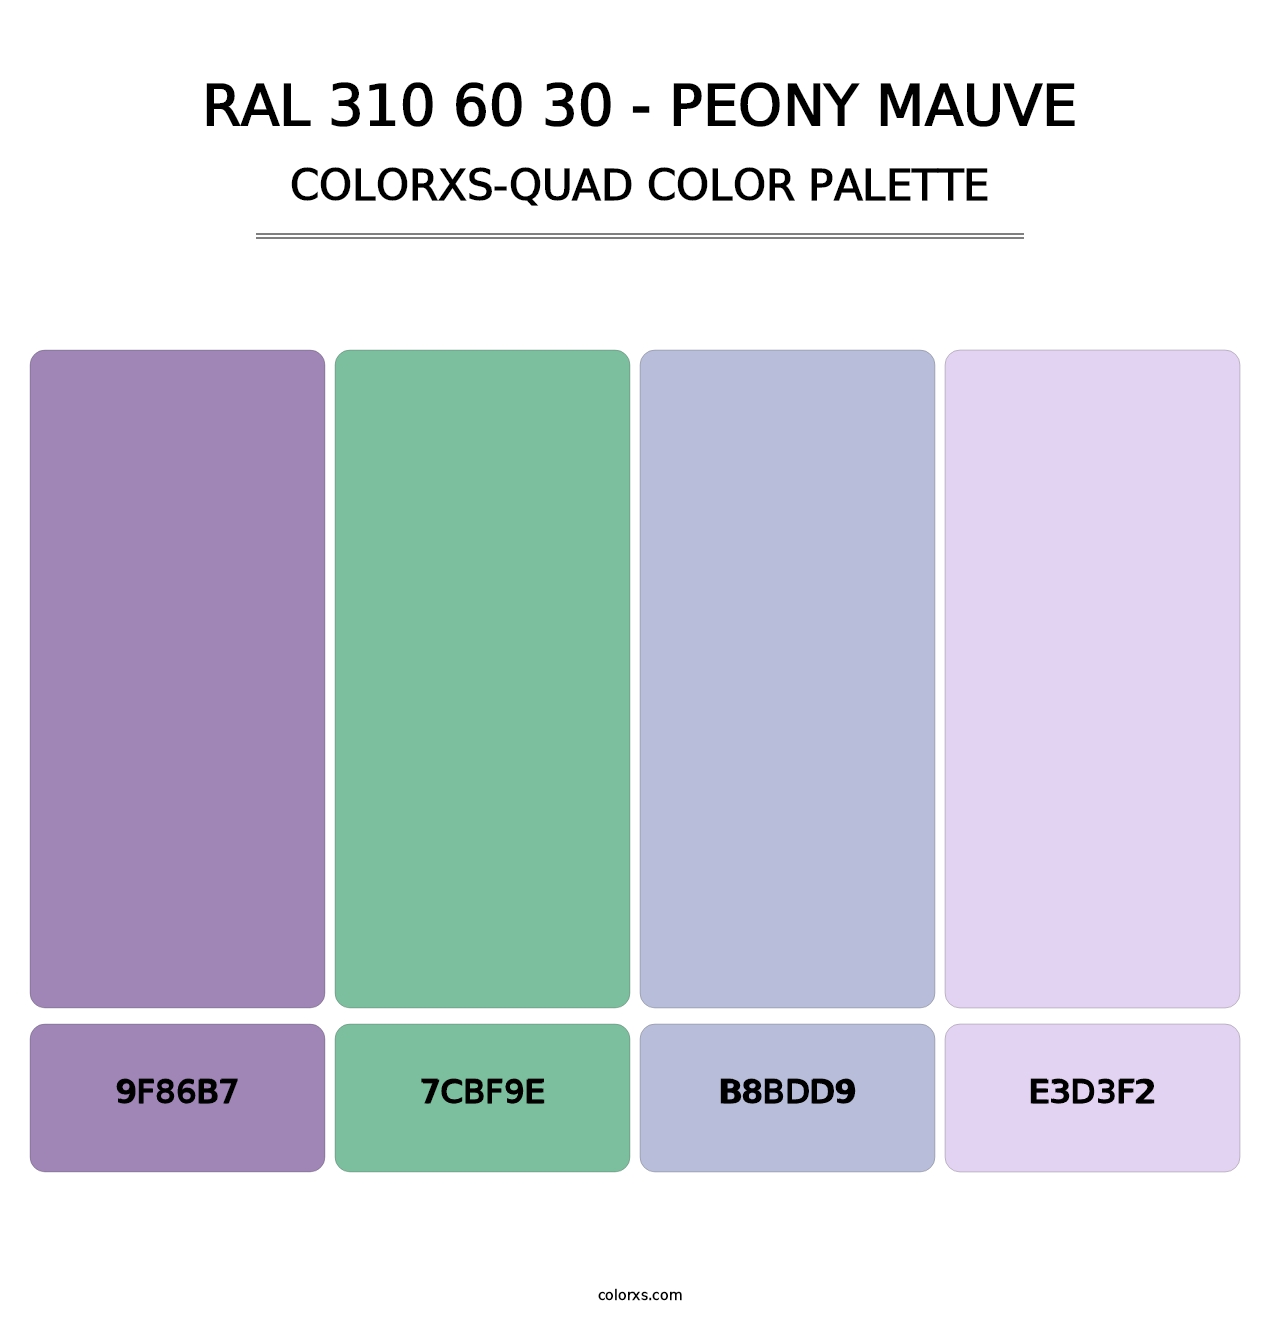 RAL 310 60 30 - Peony Mauve - Colorxs Quad Palette